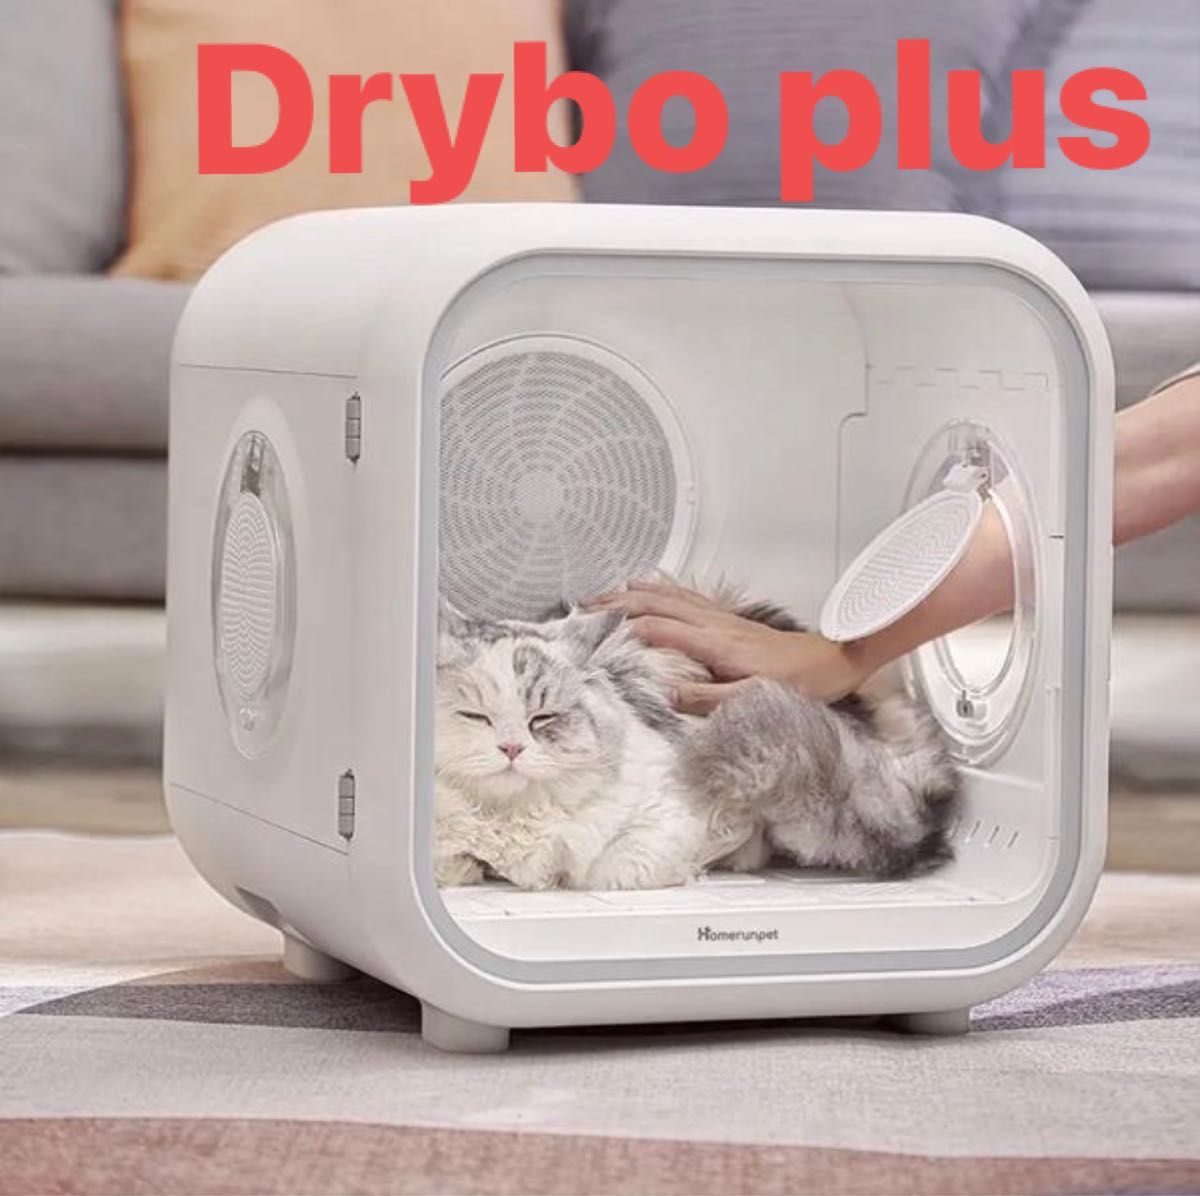 Drybo Plus ドライボプラス Homerunpet ペットドライルーム ドライヤー